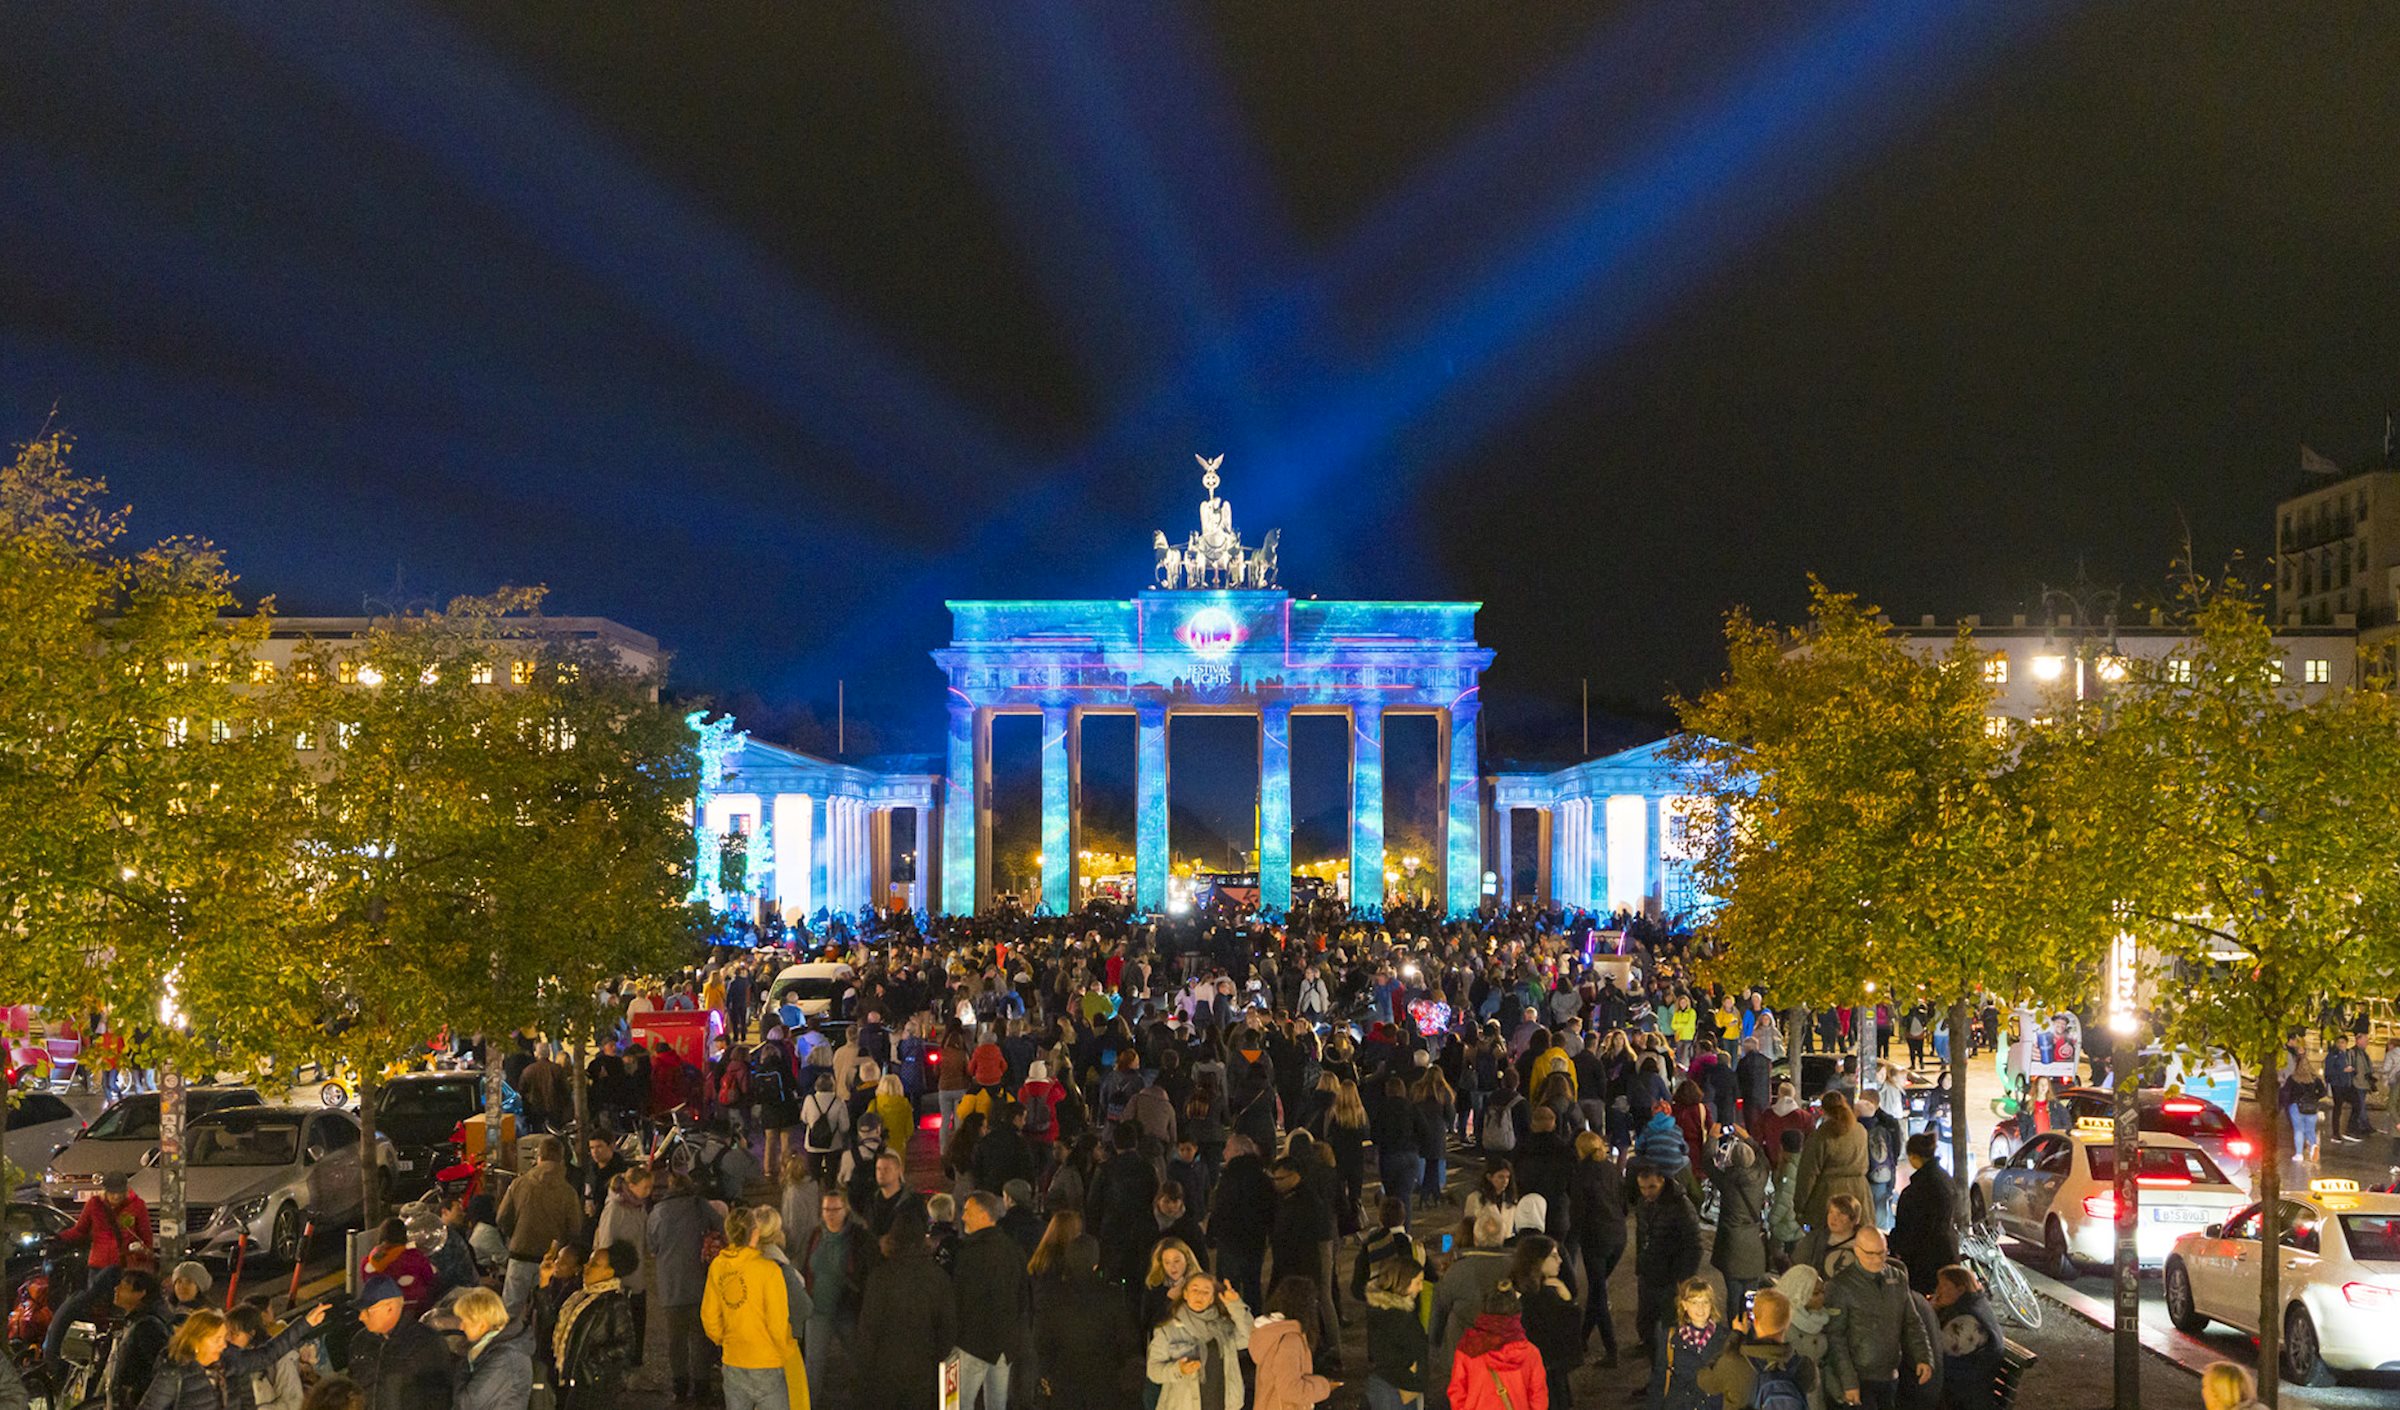 PRG was een van de technologiepartners en kreeg de opdracht om media- en projectietechnologie te installeren op acht verschillende locaties, waaronder de Brandenburger Tor en de Berlijnse tv-toren tijdens het Festival of Lights.